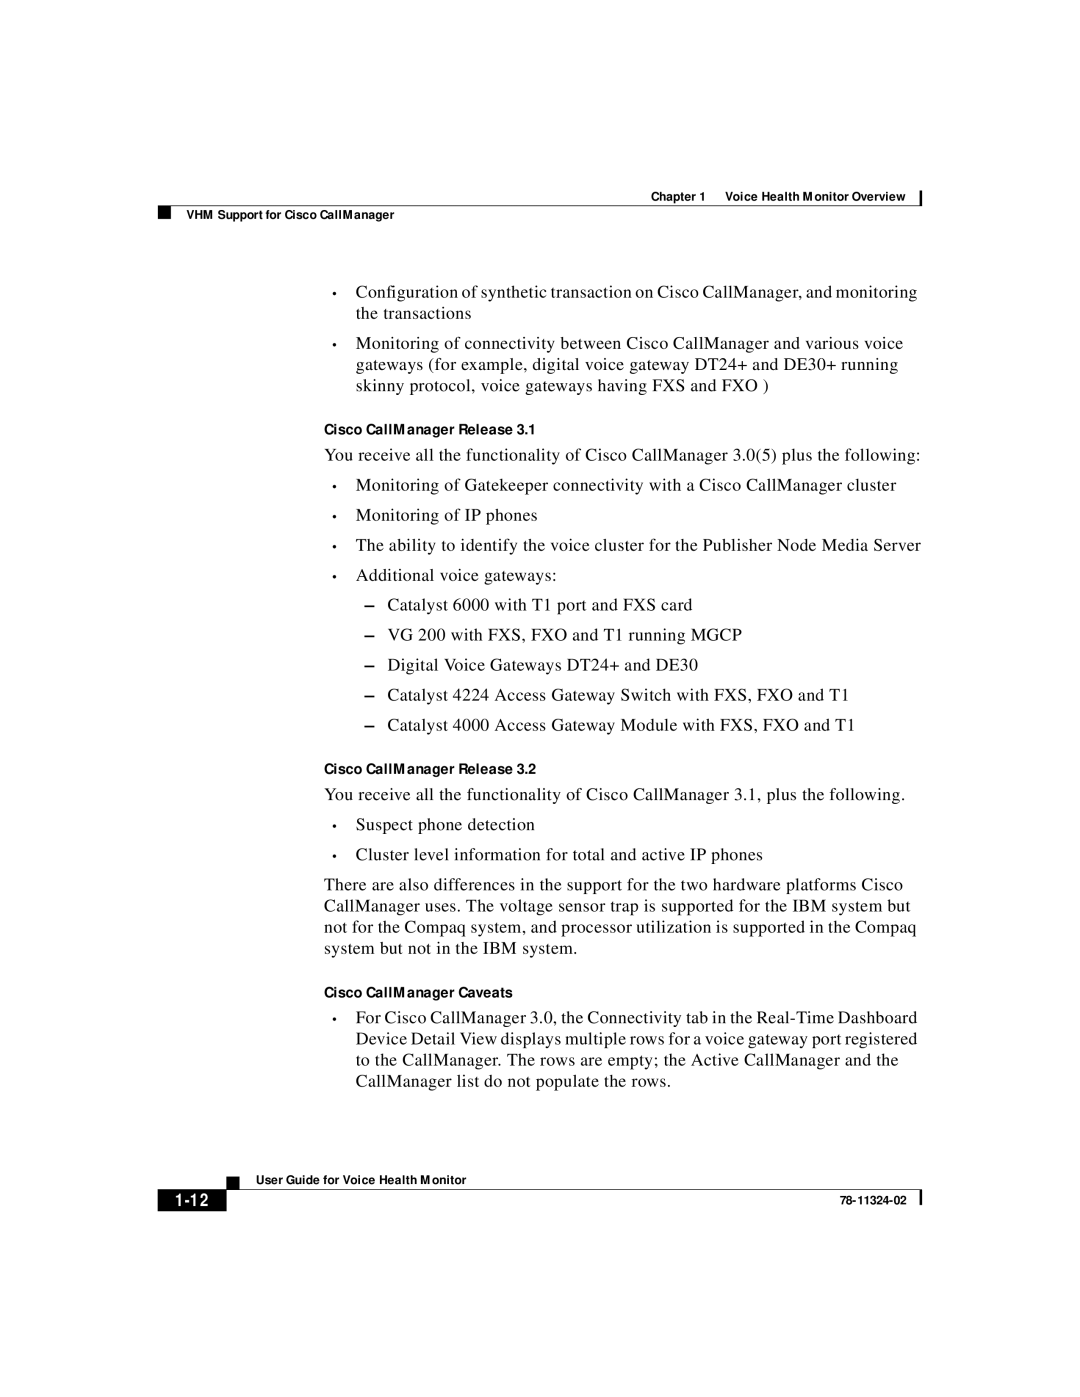 Cisco Systems 78-11324-02 manual Cisco CallManager Caveats, 1-12, Cisco CallManager Release 